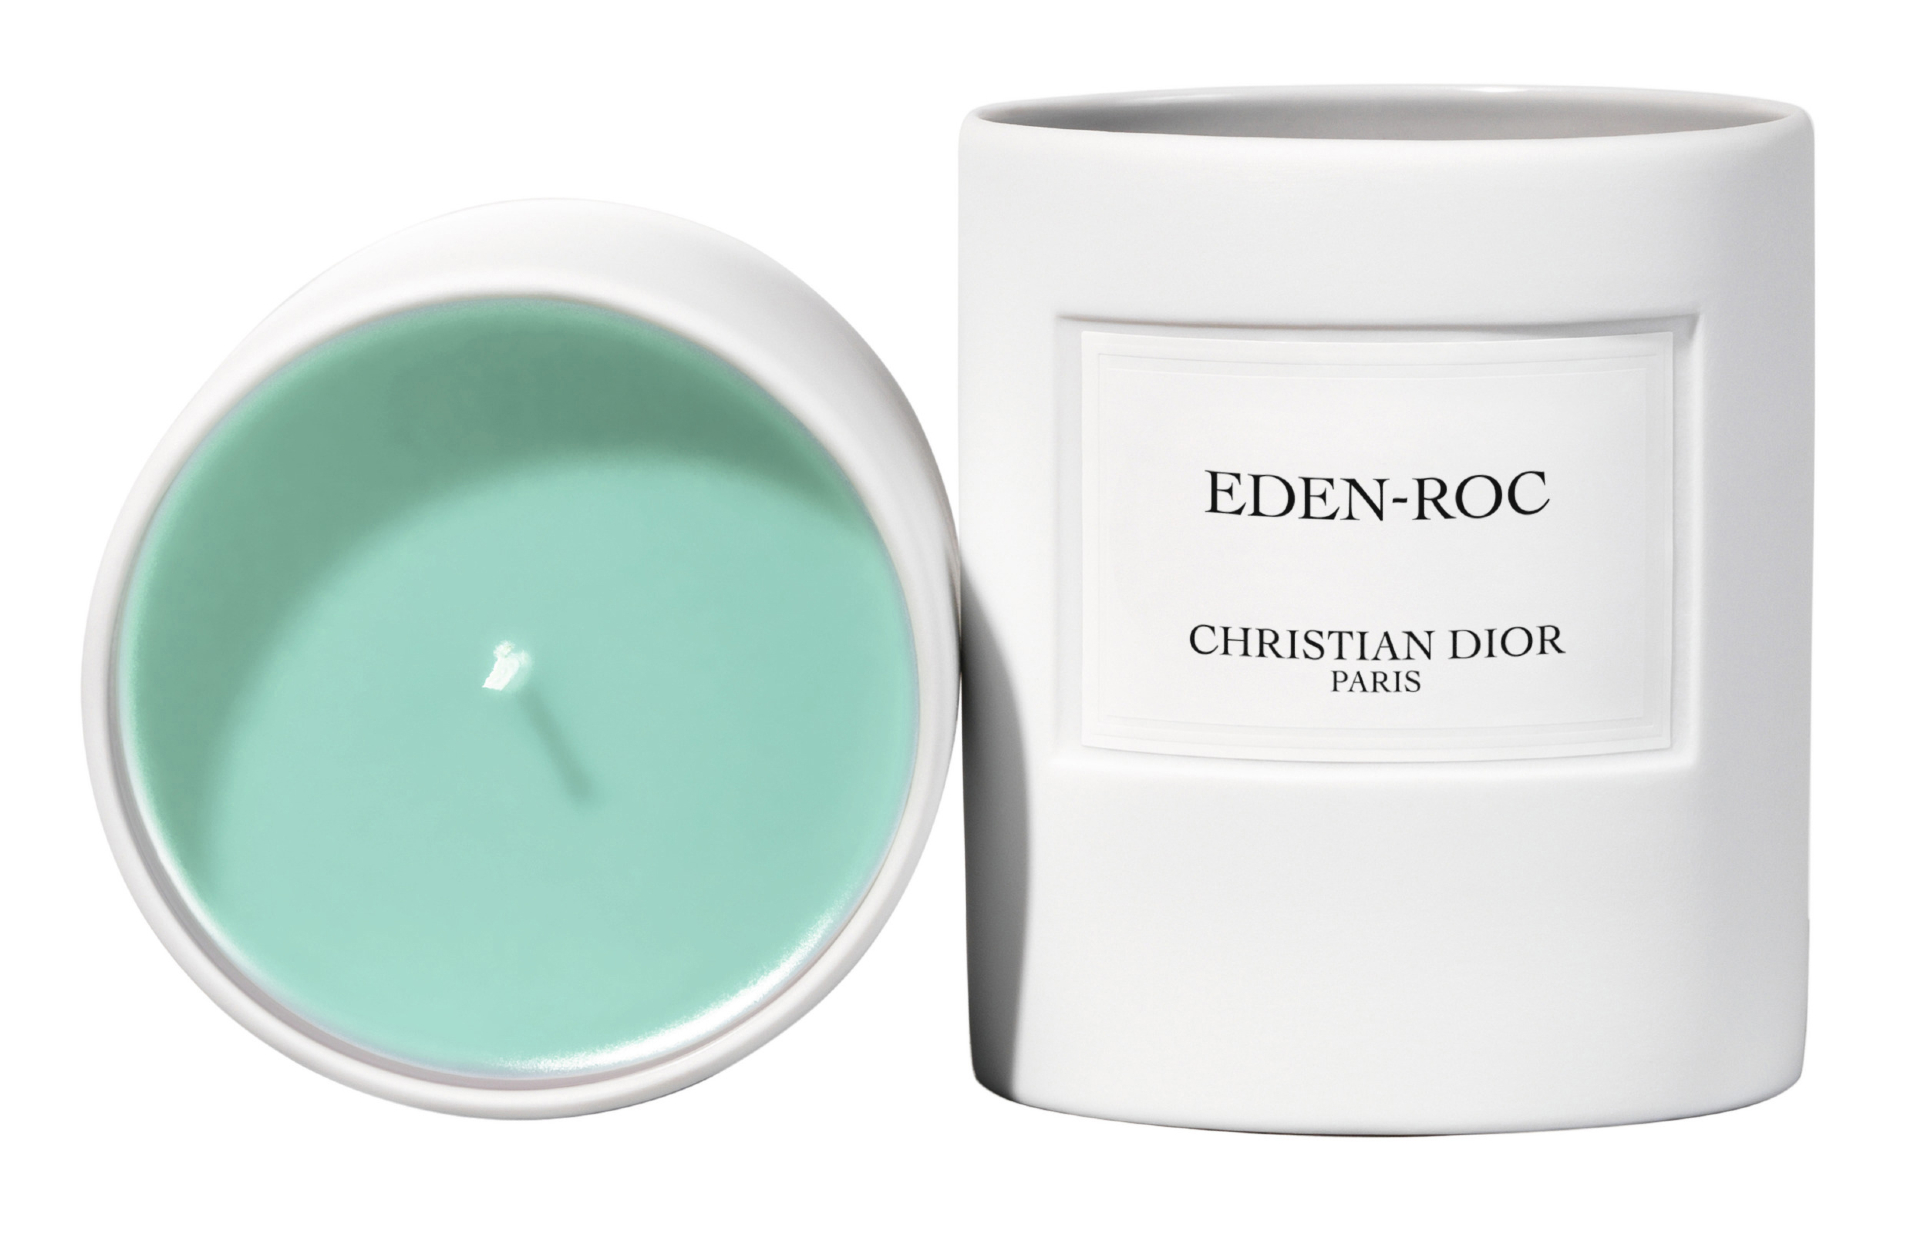 Свеча&nbsp;Eden-Roc, La Collection Priv&eacute;e Christian Dior